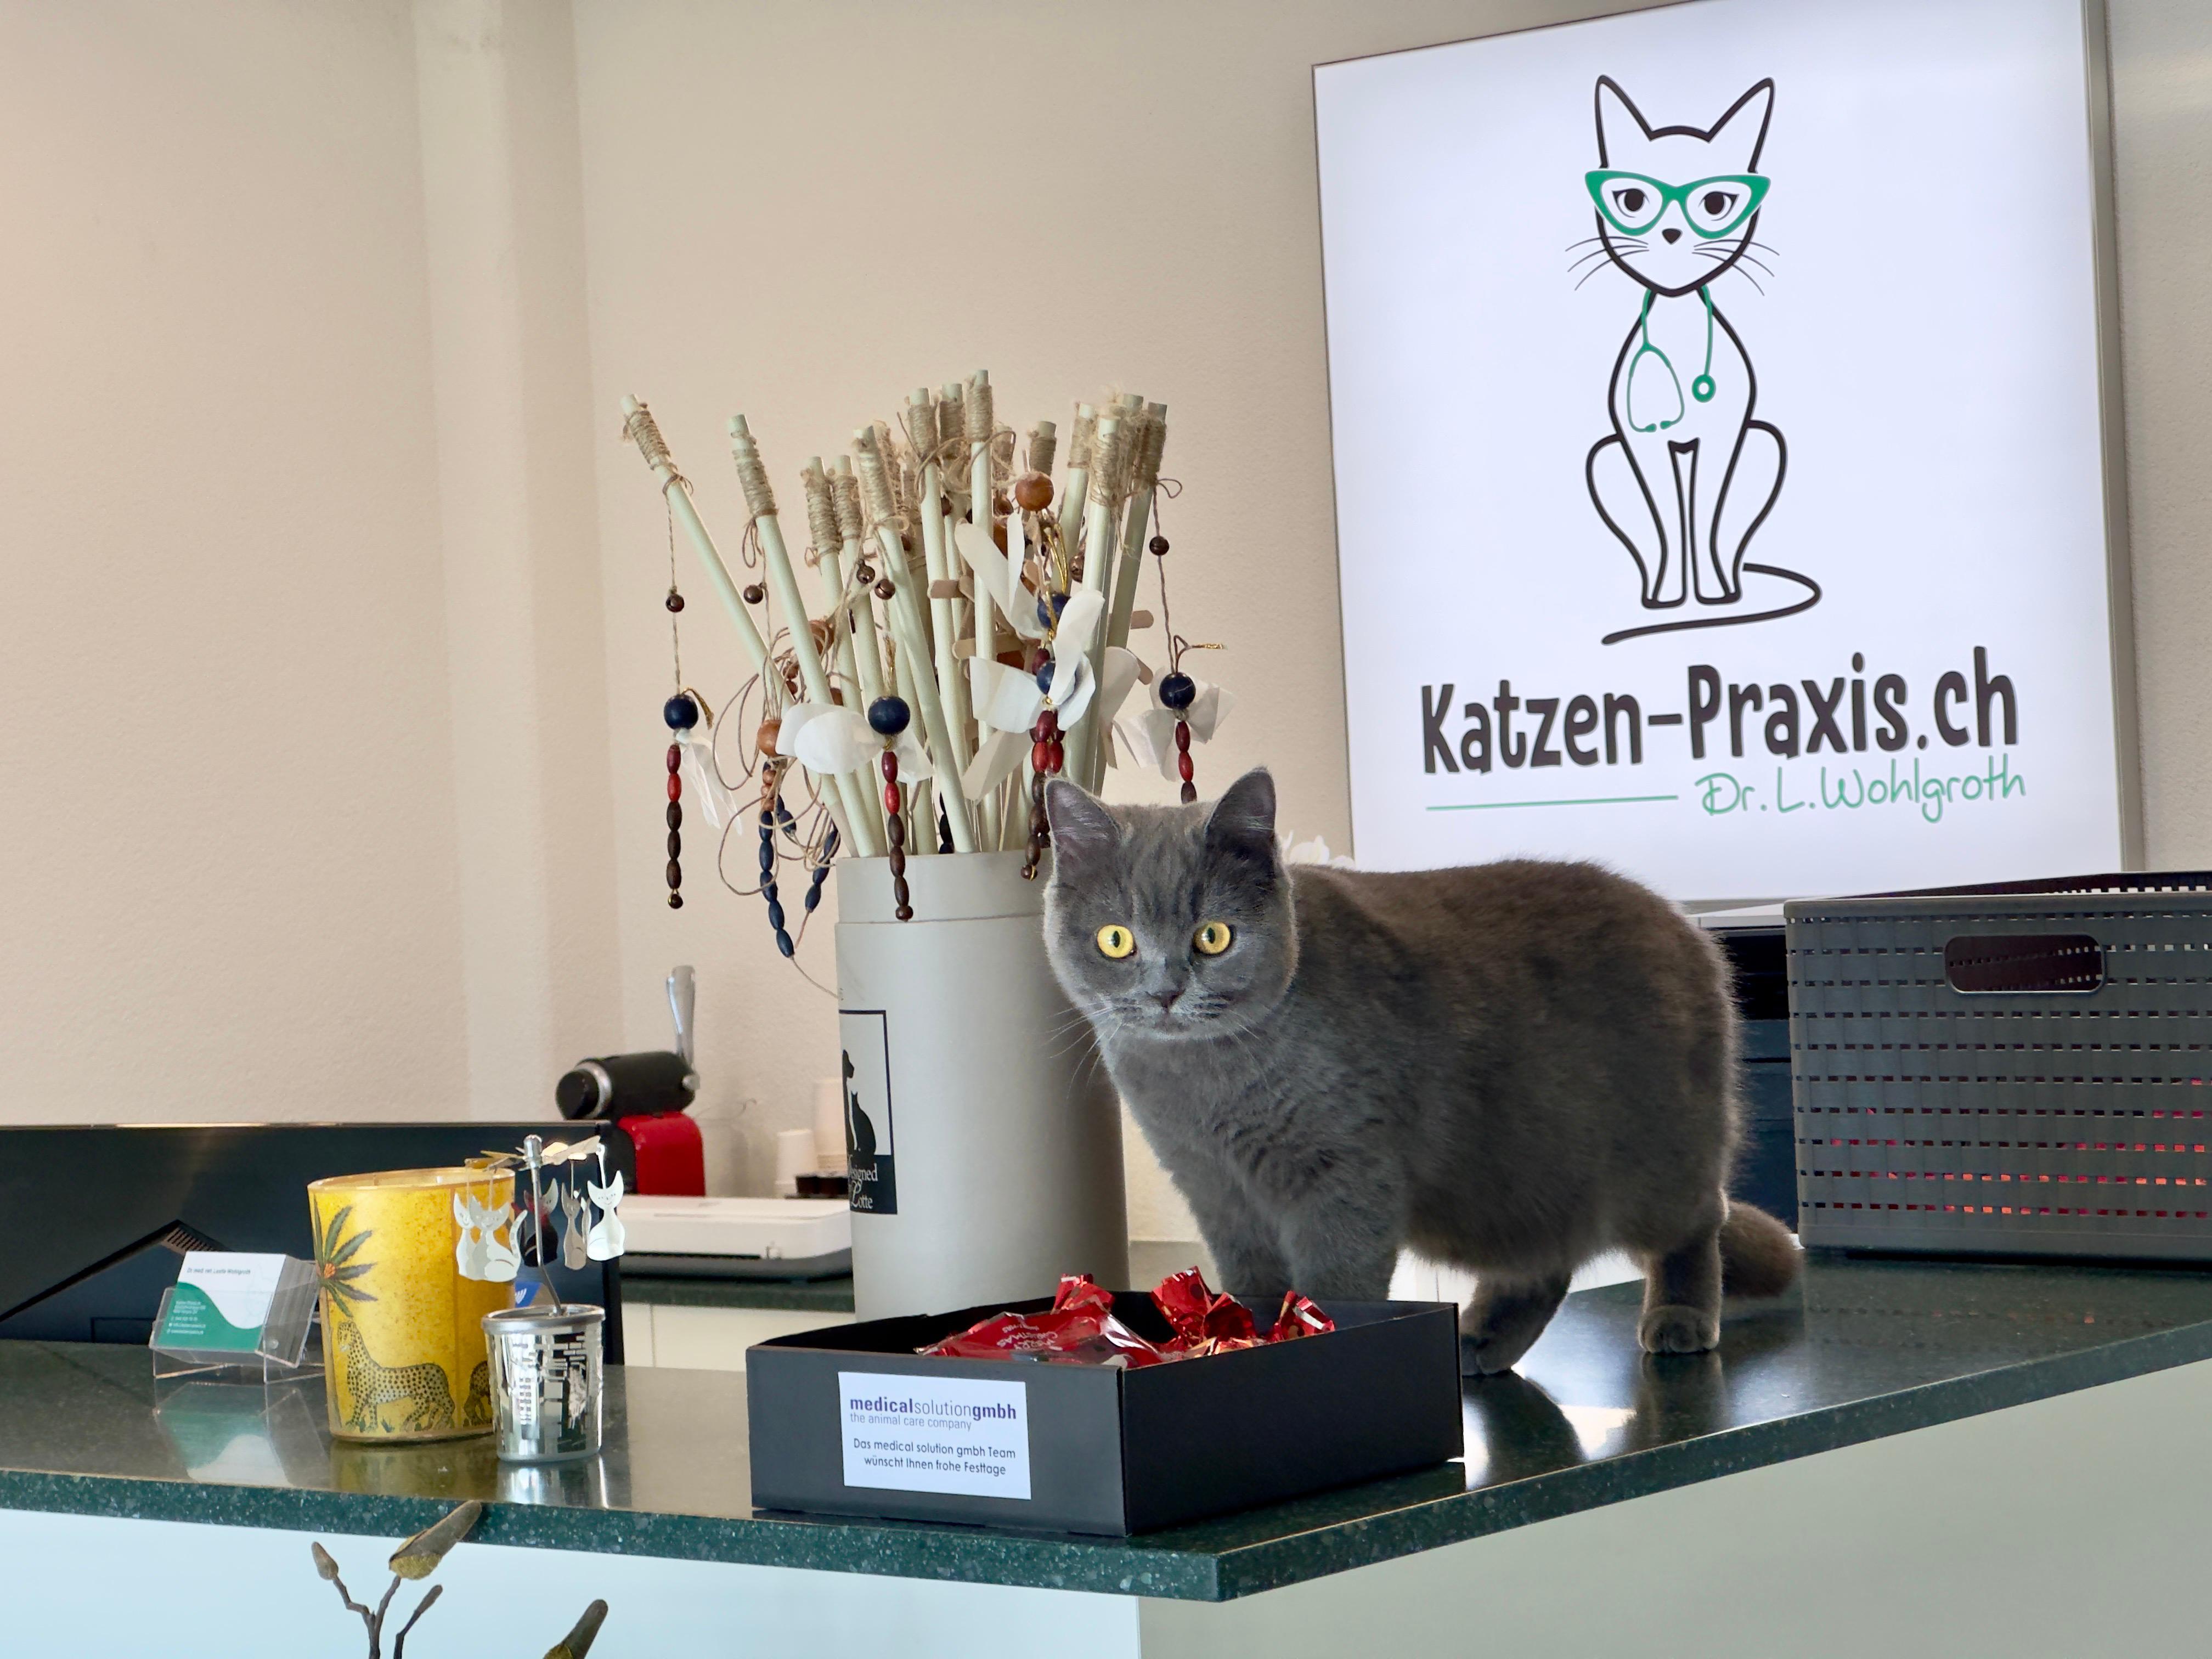 Bilder Katzen-Praxis.ch